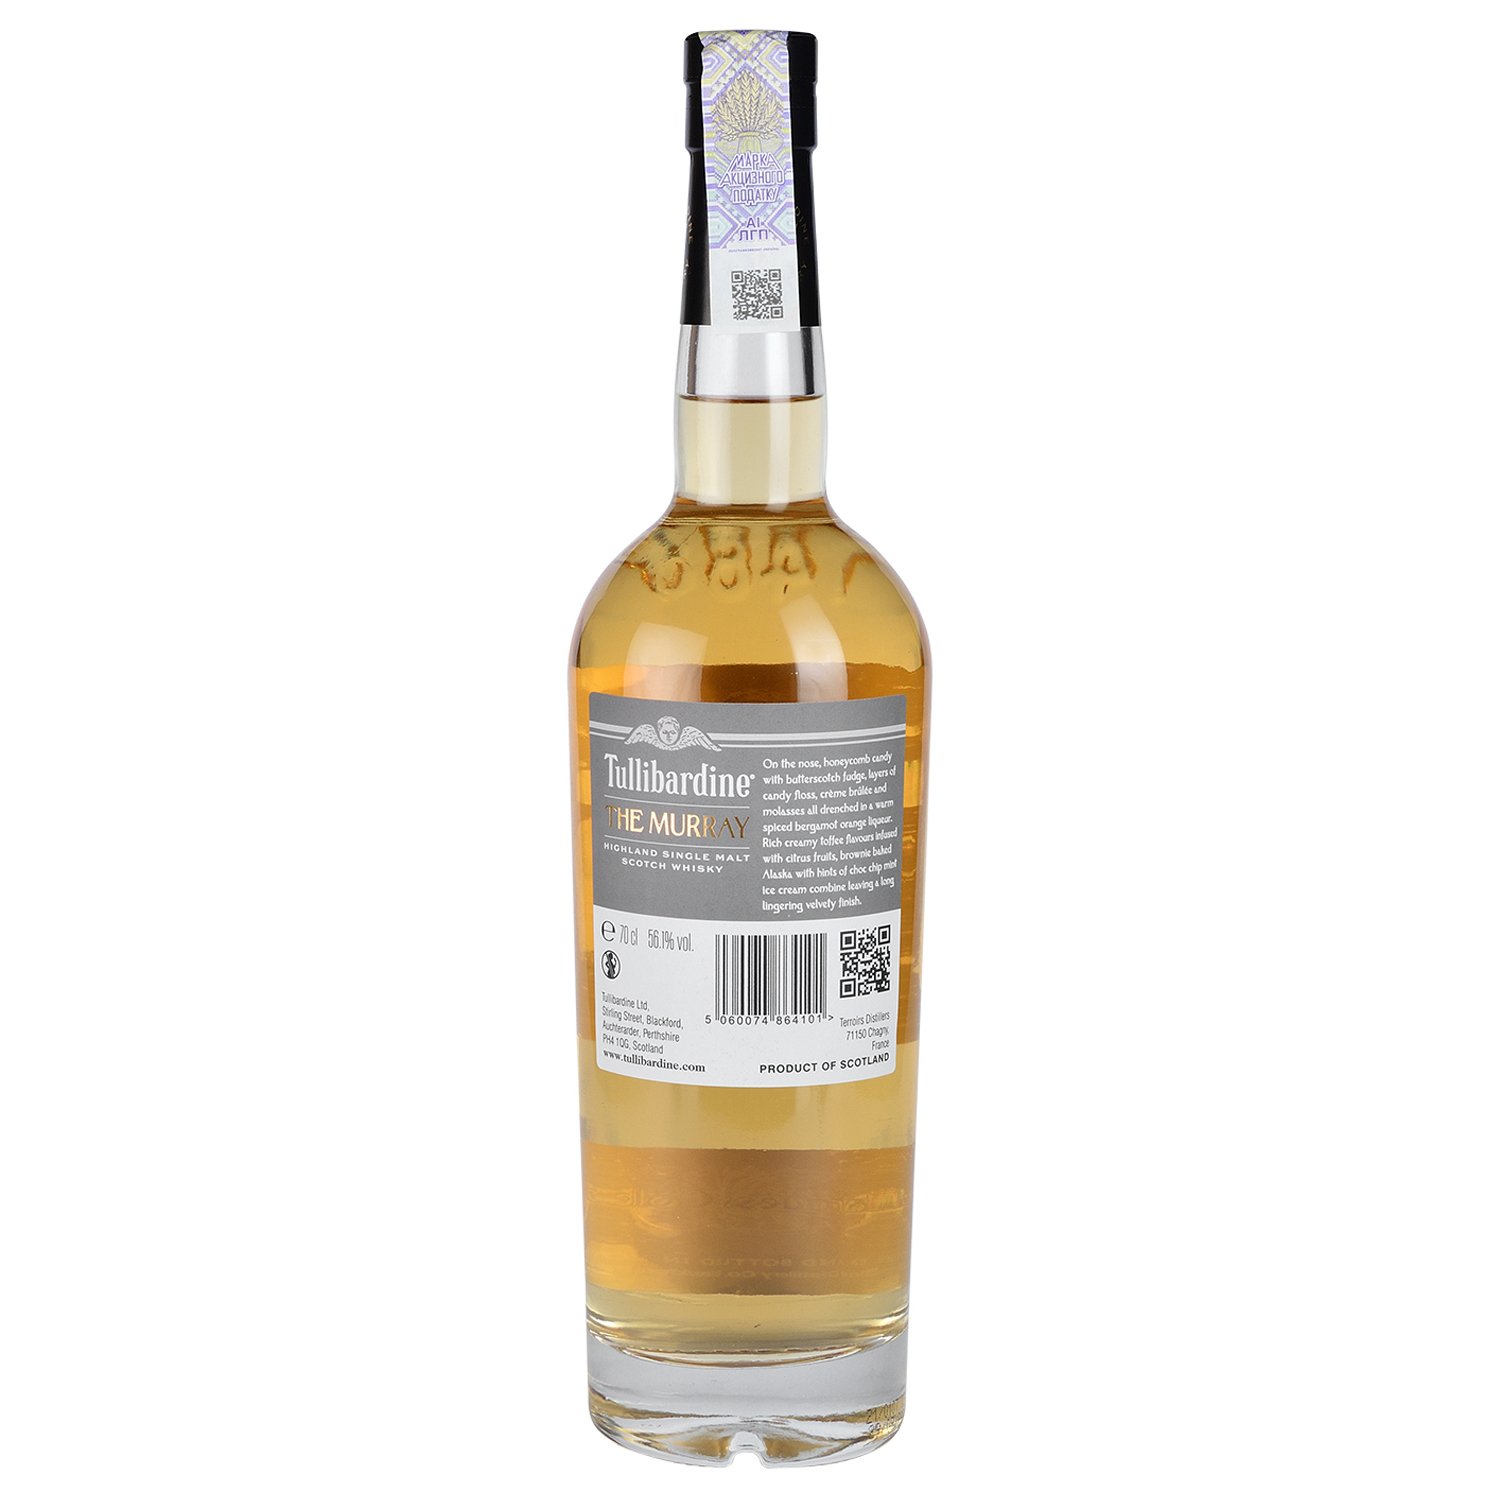 Віскі Tullibardine The Murray Single Malt Scotch Whisky 2008 56.1% 0.7 л у подарунковій упаковці - фото 3